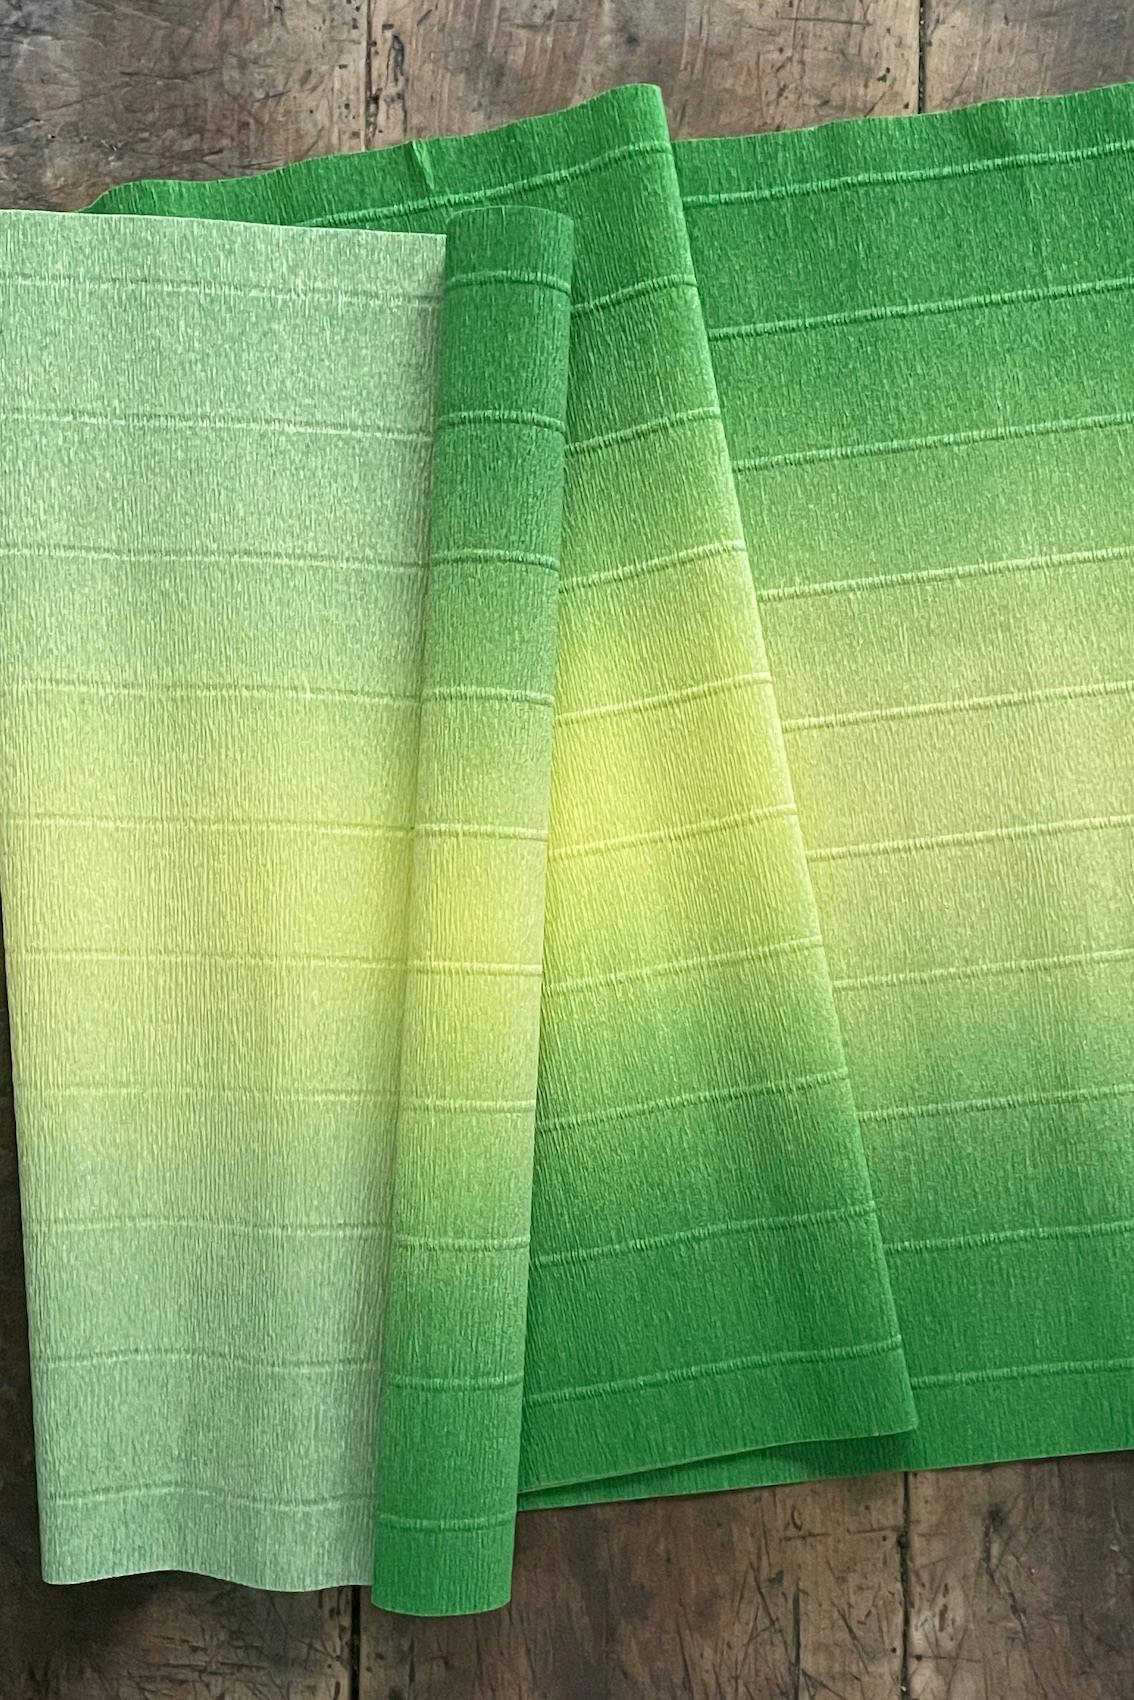 Tvåfärgat kräppapper 180 g i nyansen grön (600/5) från Ljuva Drömmar.